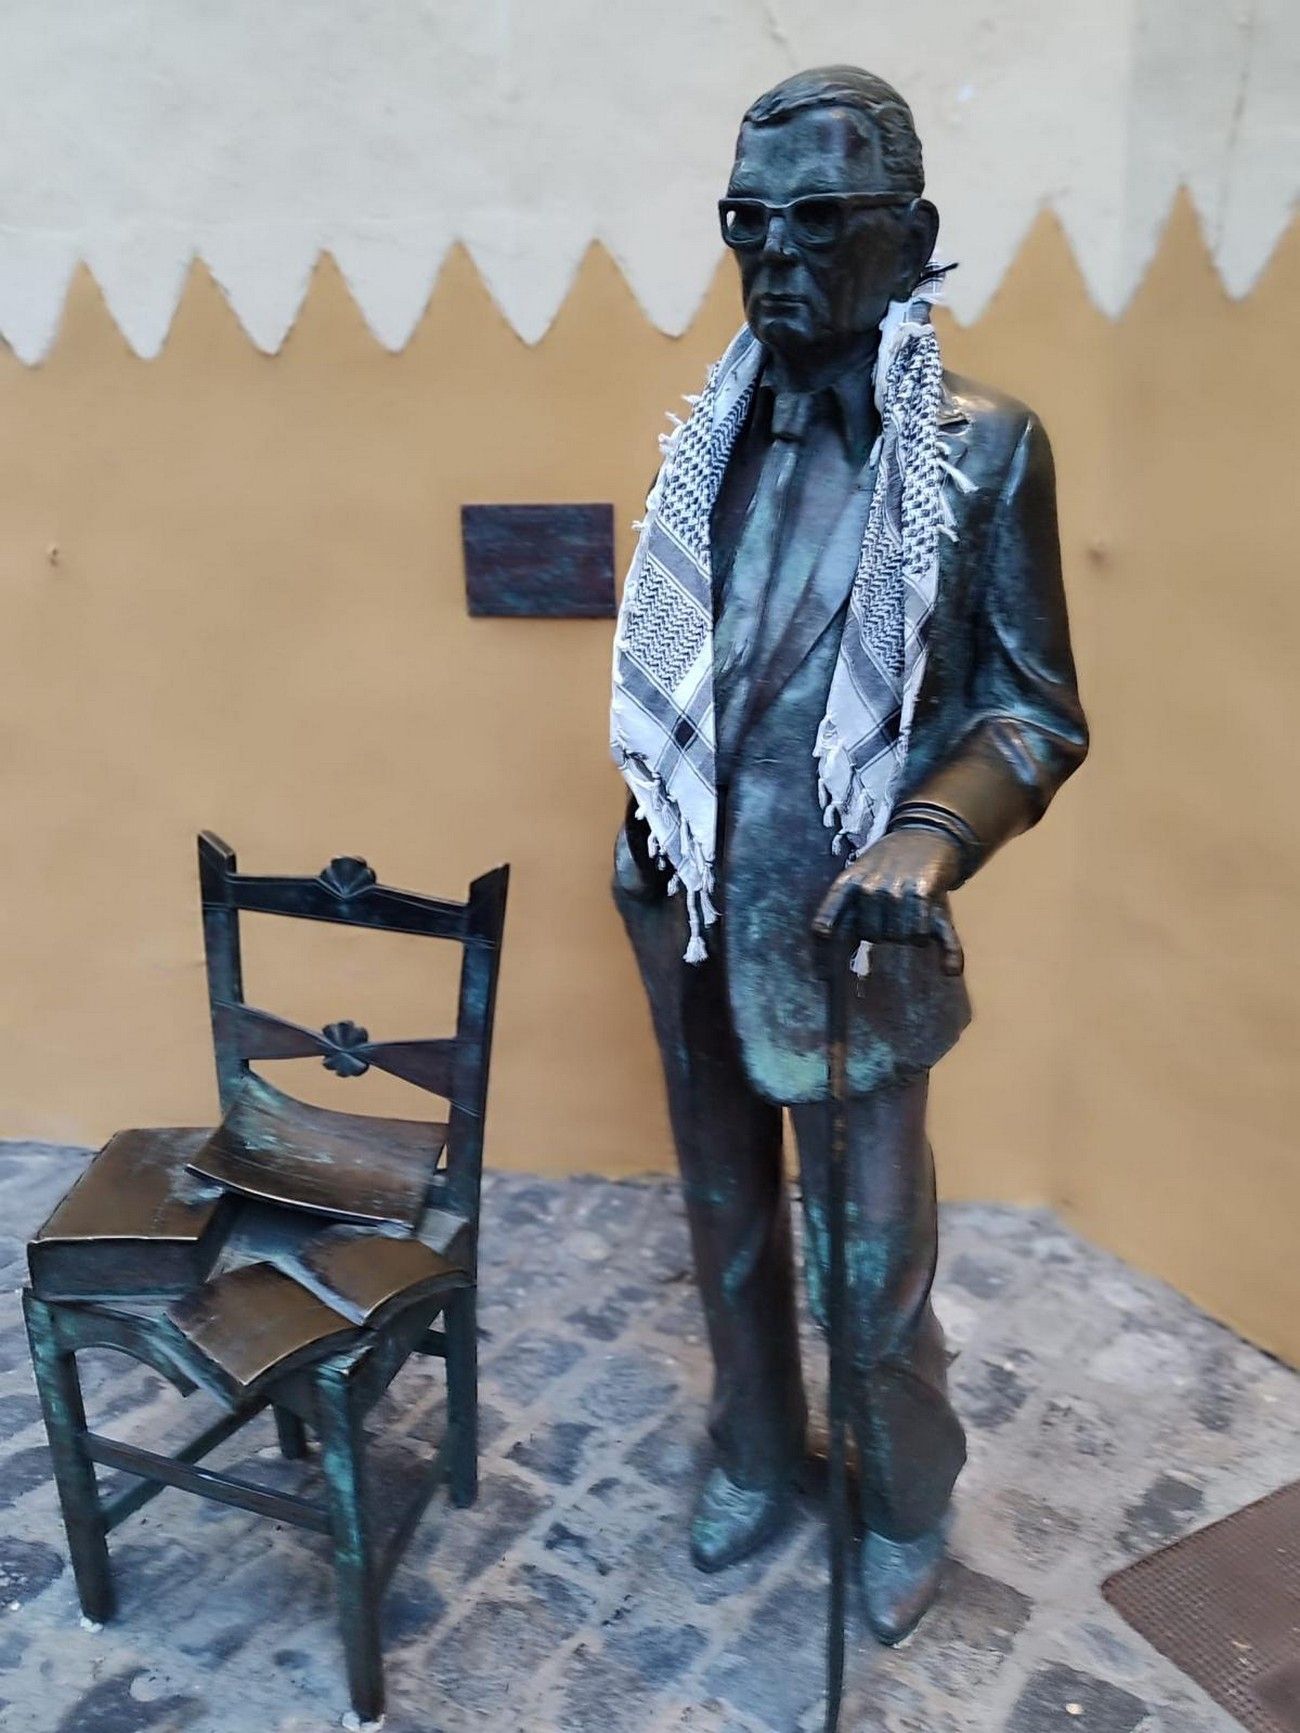 Las esculturas de Las Palmas de Gran Canaria amanecen ataviadas con pañuelos palestinos